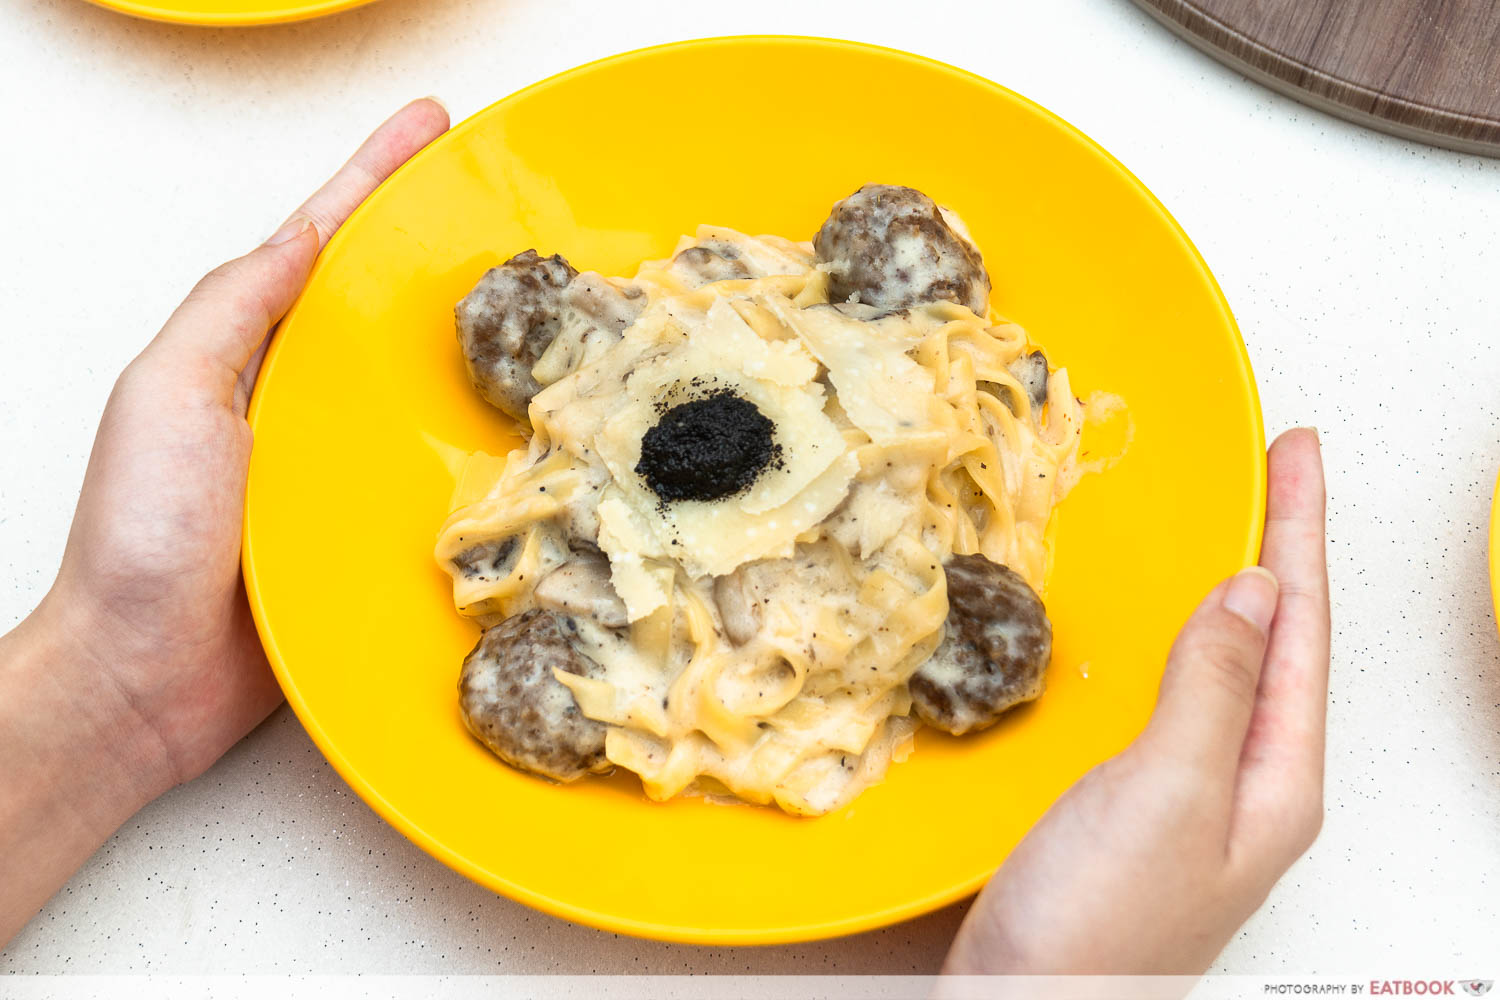 saporita truffle cheesewheel pasta intro shot